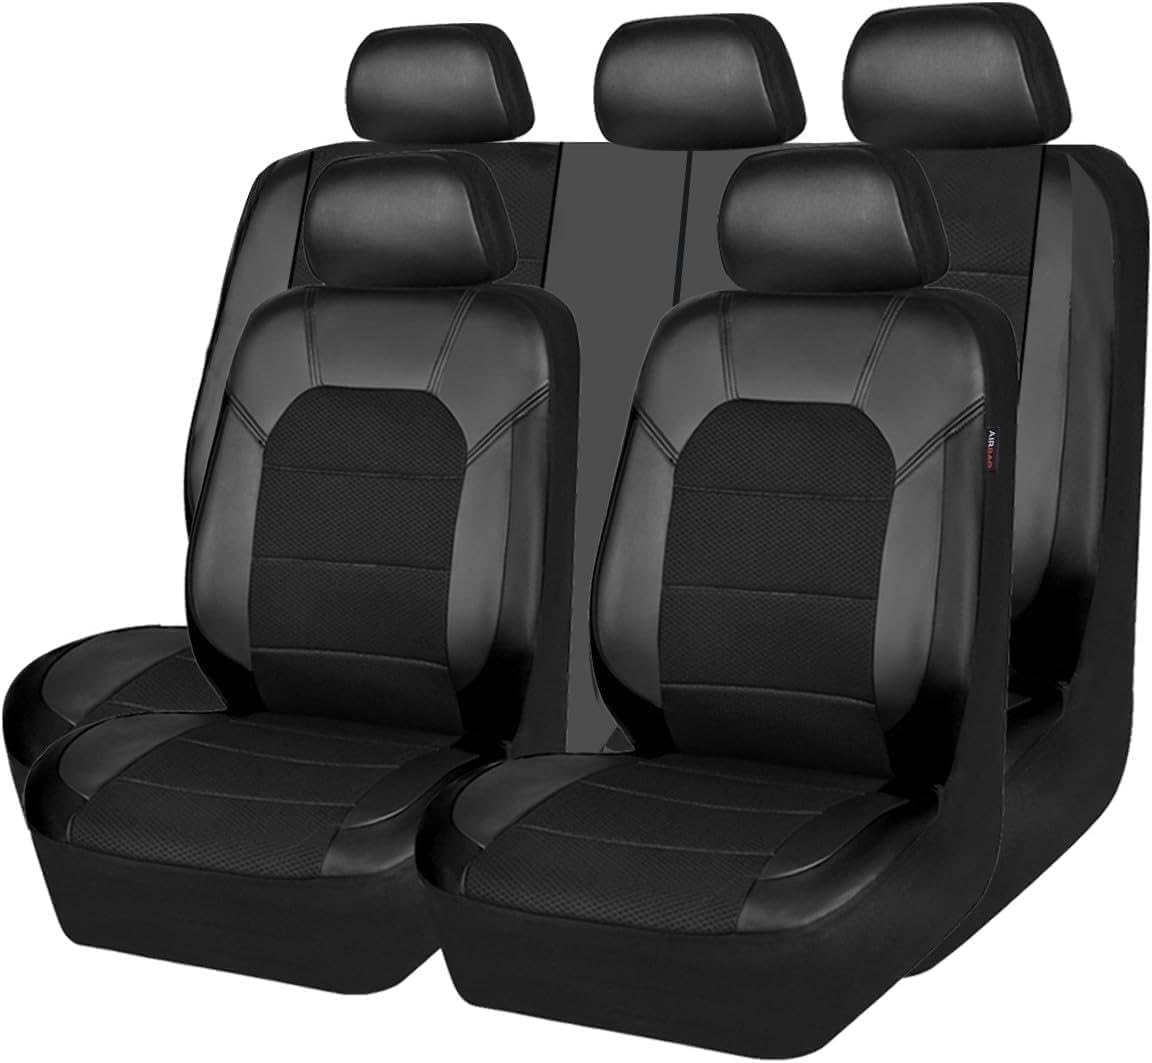 JOSKAA Autositzbezüge Universal passend für Mercede Benz W203 W204 W205 W211 W212 W213 W124 GLK GLC W164 W166 GLE Sitzbezug-Sets von JOSKAA